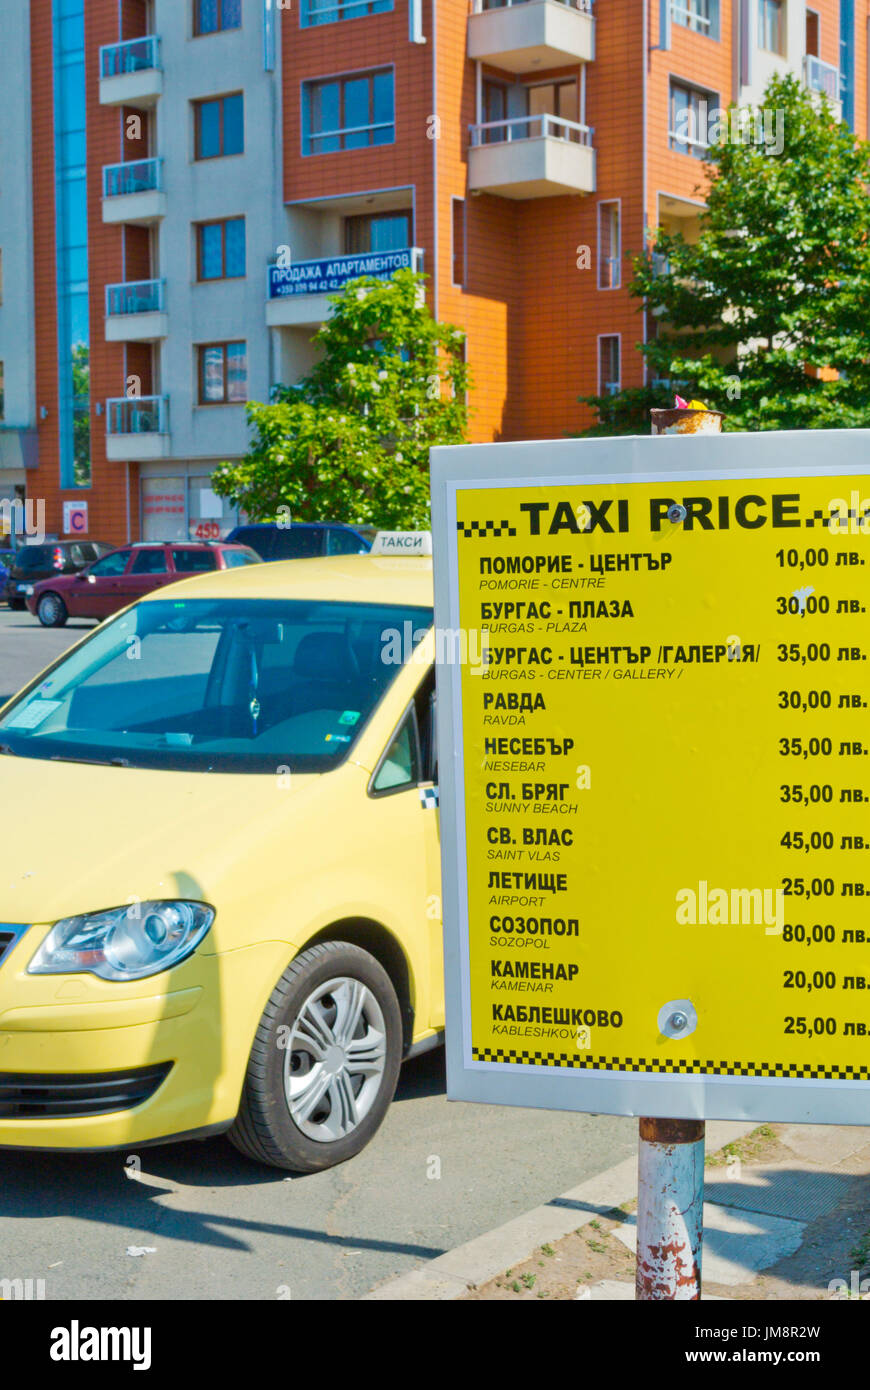 Station de taxi, avec la liste des prix, Pomorie, Bulgarie Banque D'Images